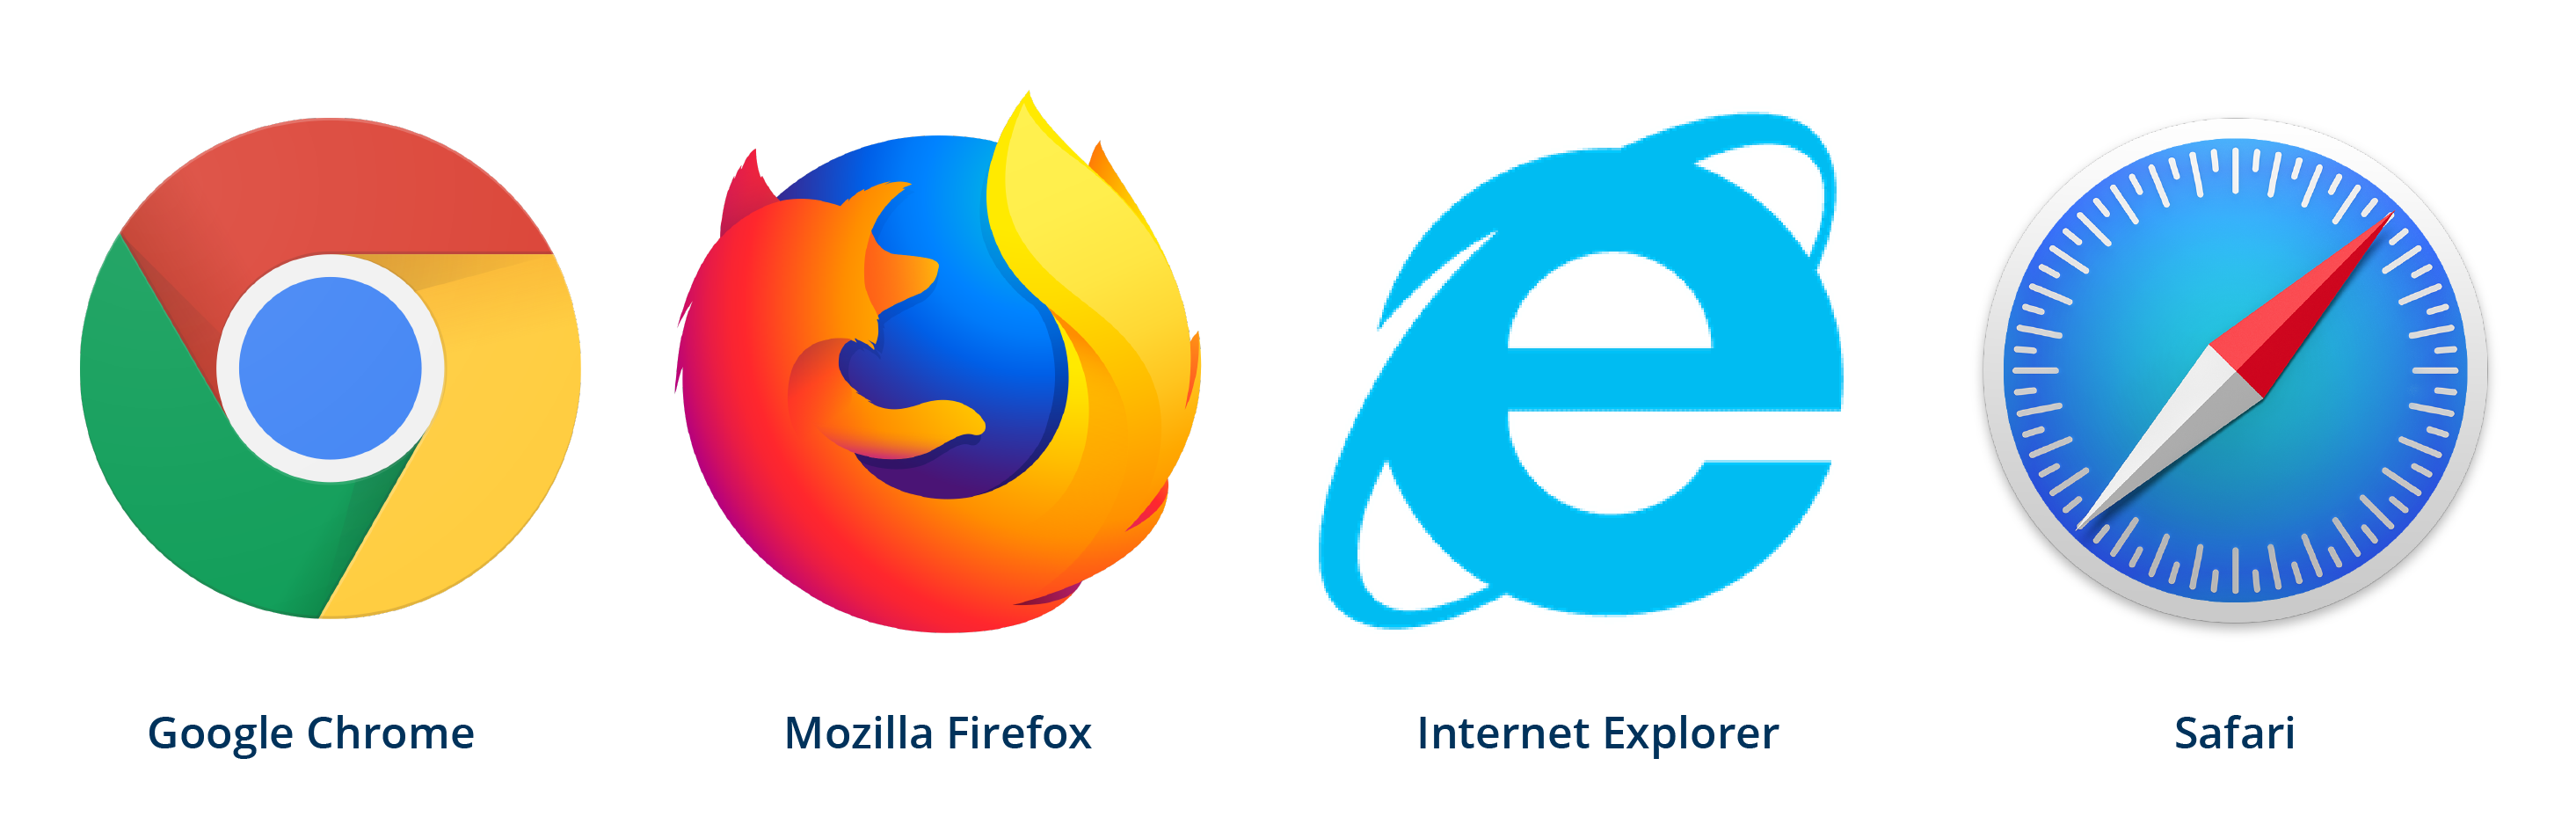 logos-navegadores